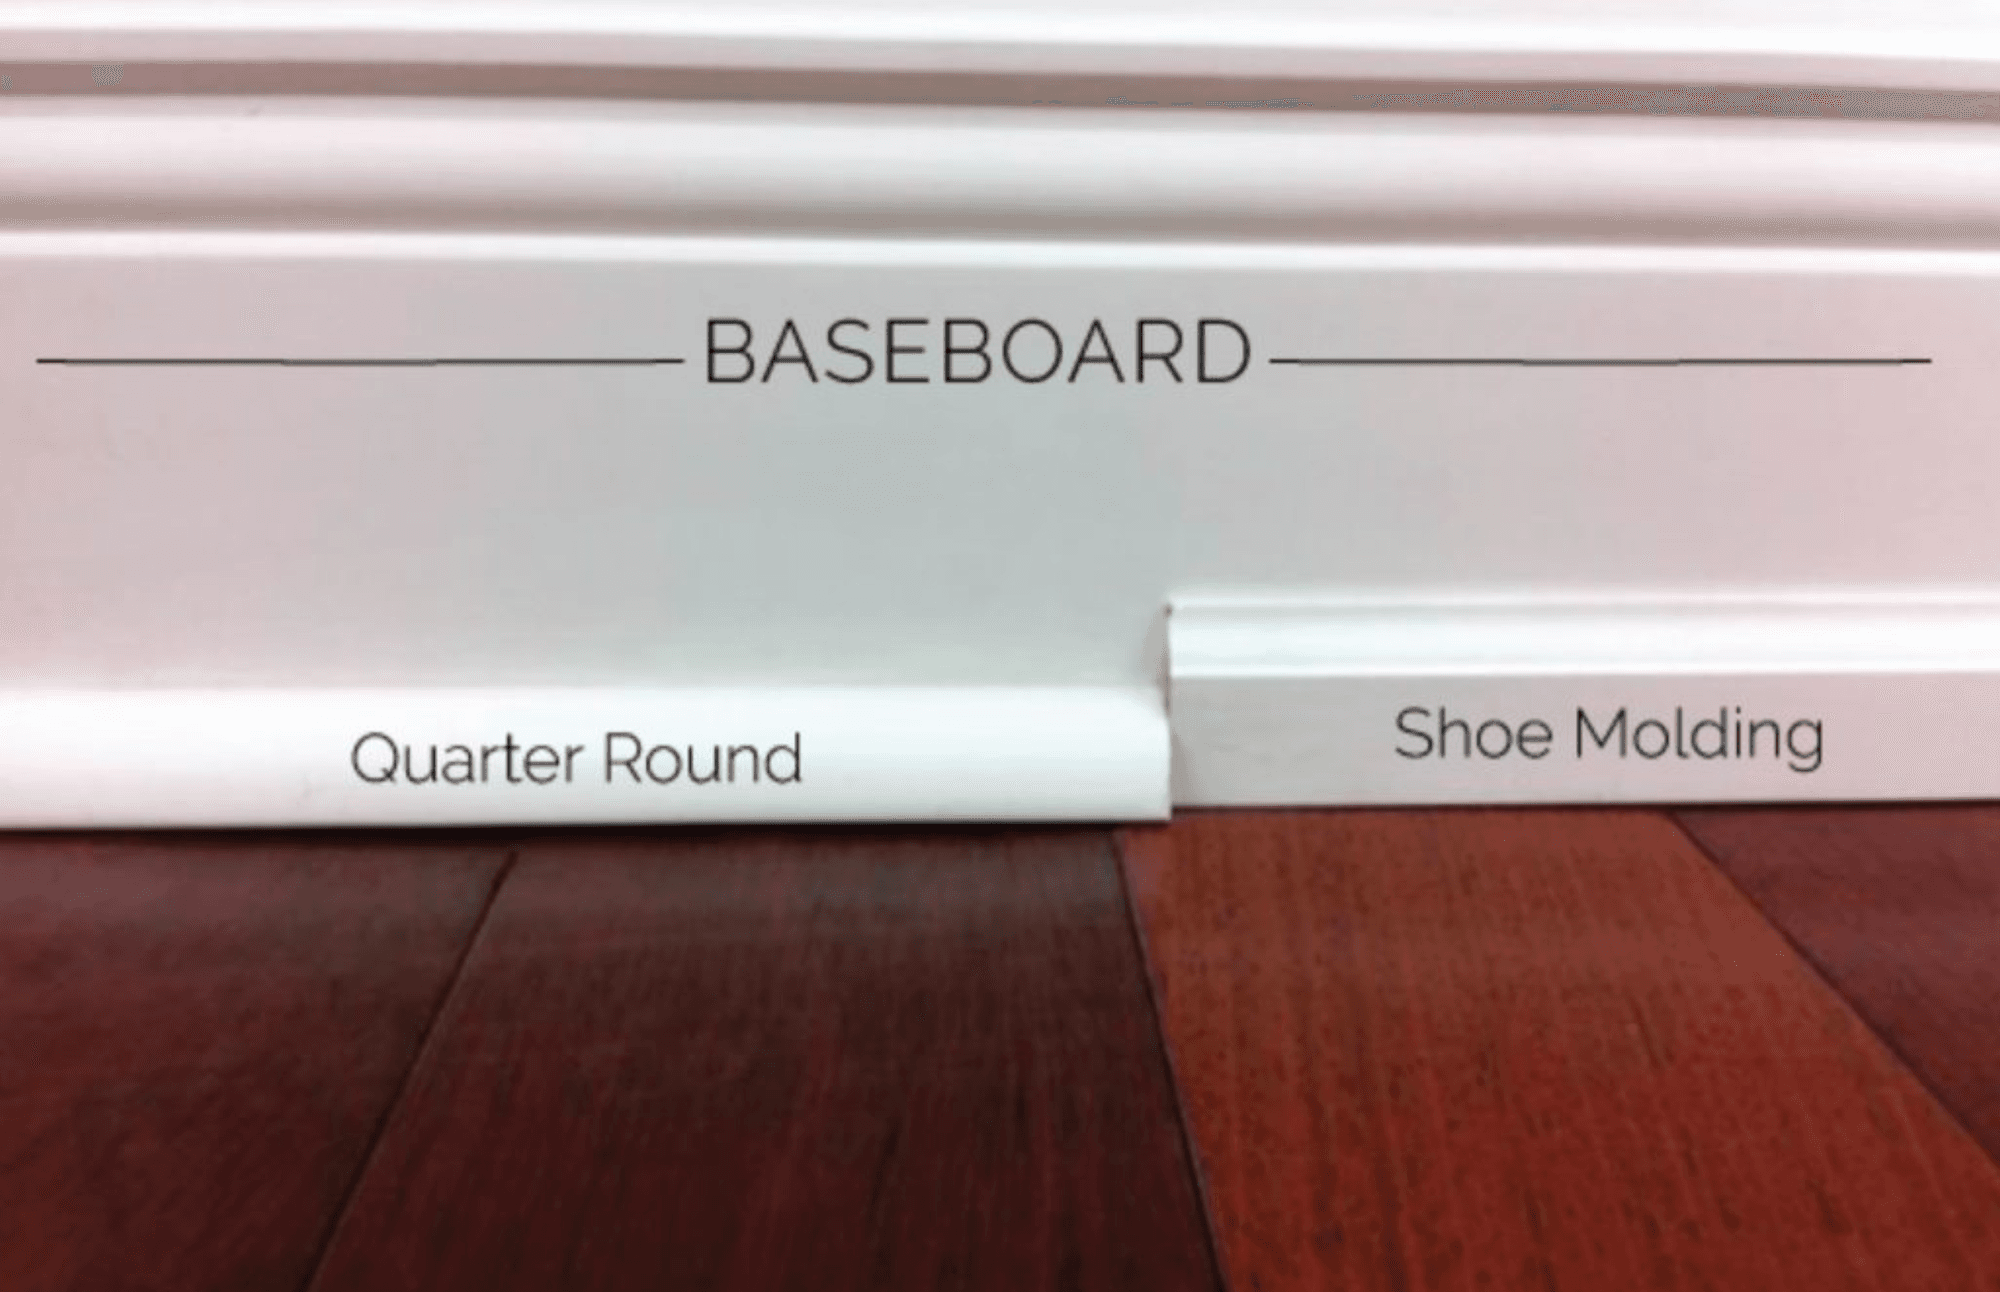 For Blog Only - Sabrina Scrivo - Quarter Round vs. Shoe Moulding